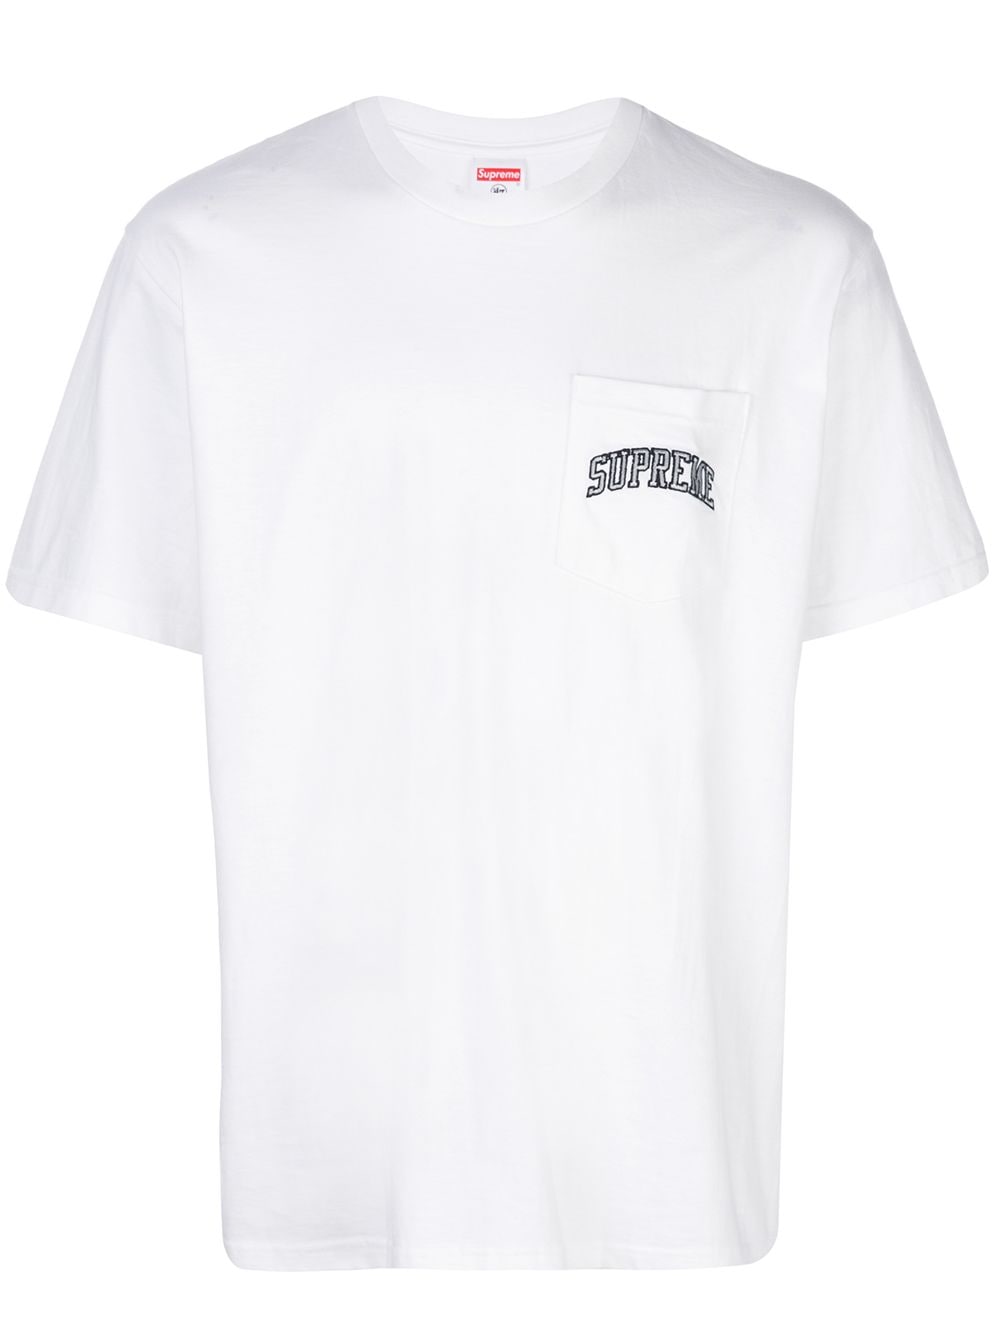 Supreme Raiders 47 Pocket T-shirt - White von Supreme